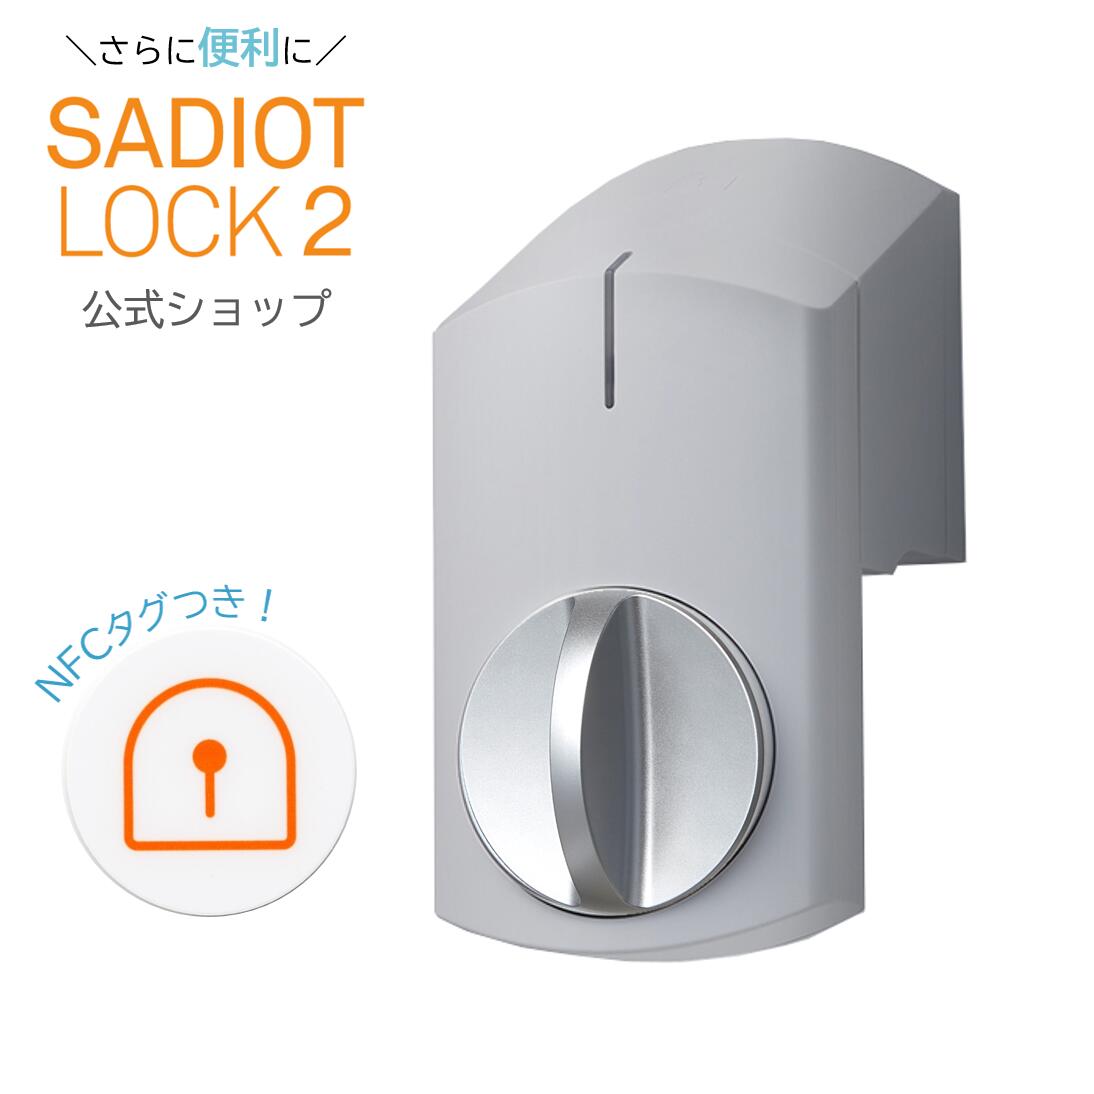 【公式】新製品 SADIOT LOCK2 サディオロックツー ストーングレイ/シルバー スマートロック Apple Watch対応 玄関 鍵 ドア オートロック ドアロック スマートキー スマートホーム IOT 自動施錠…